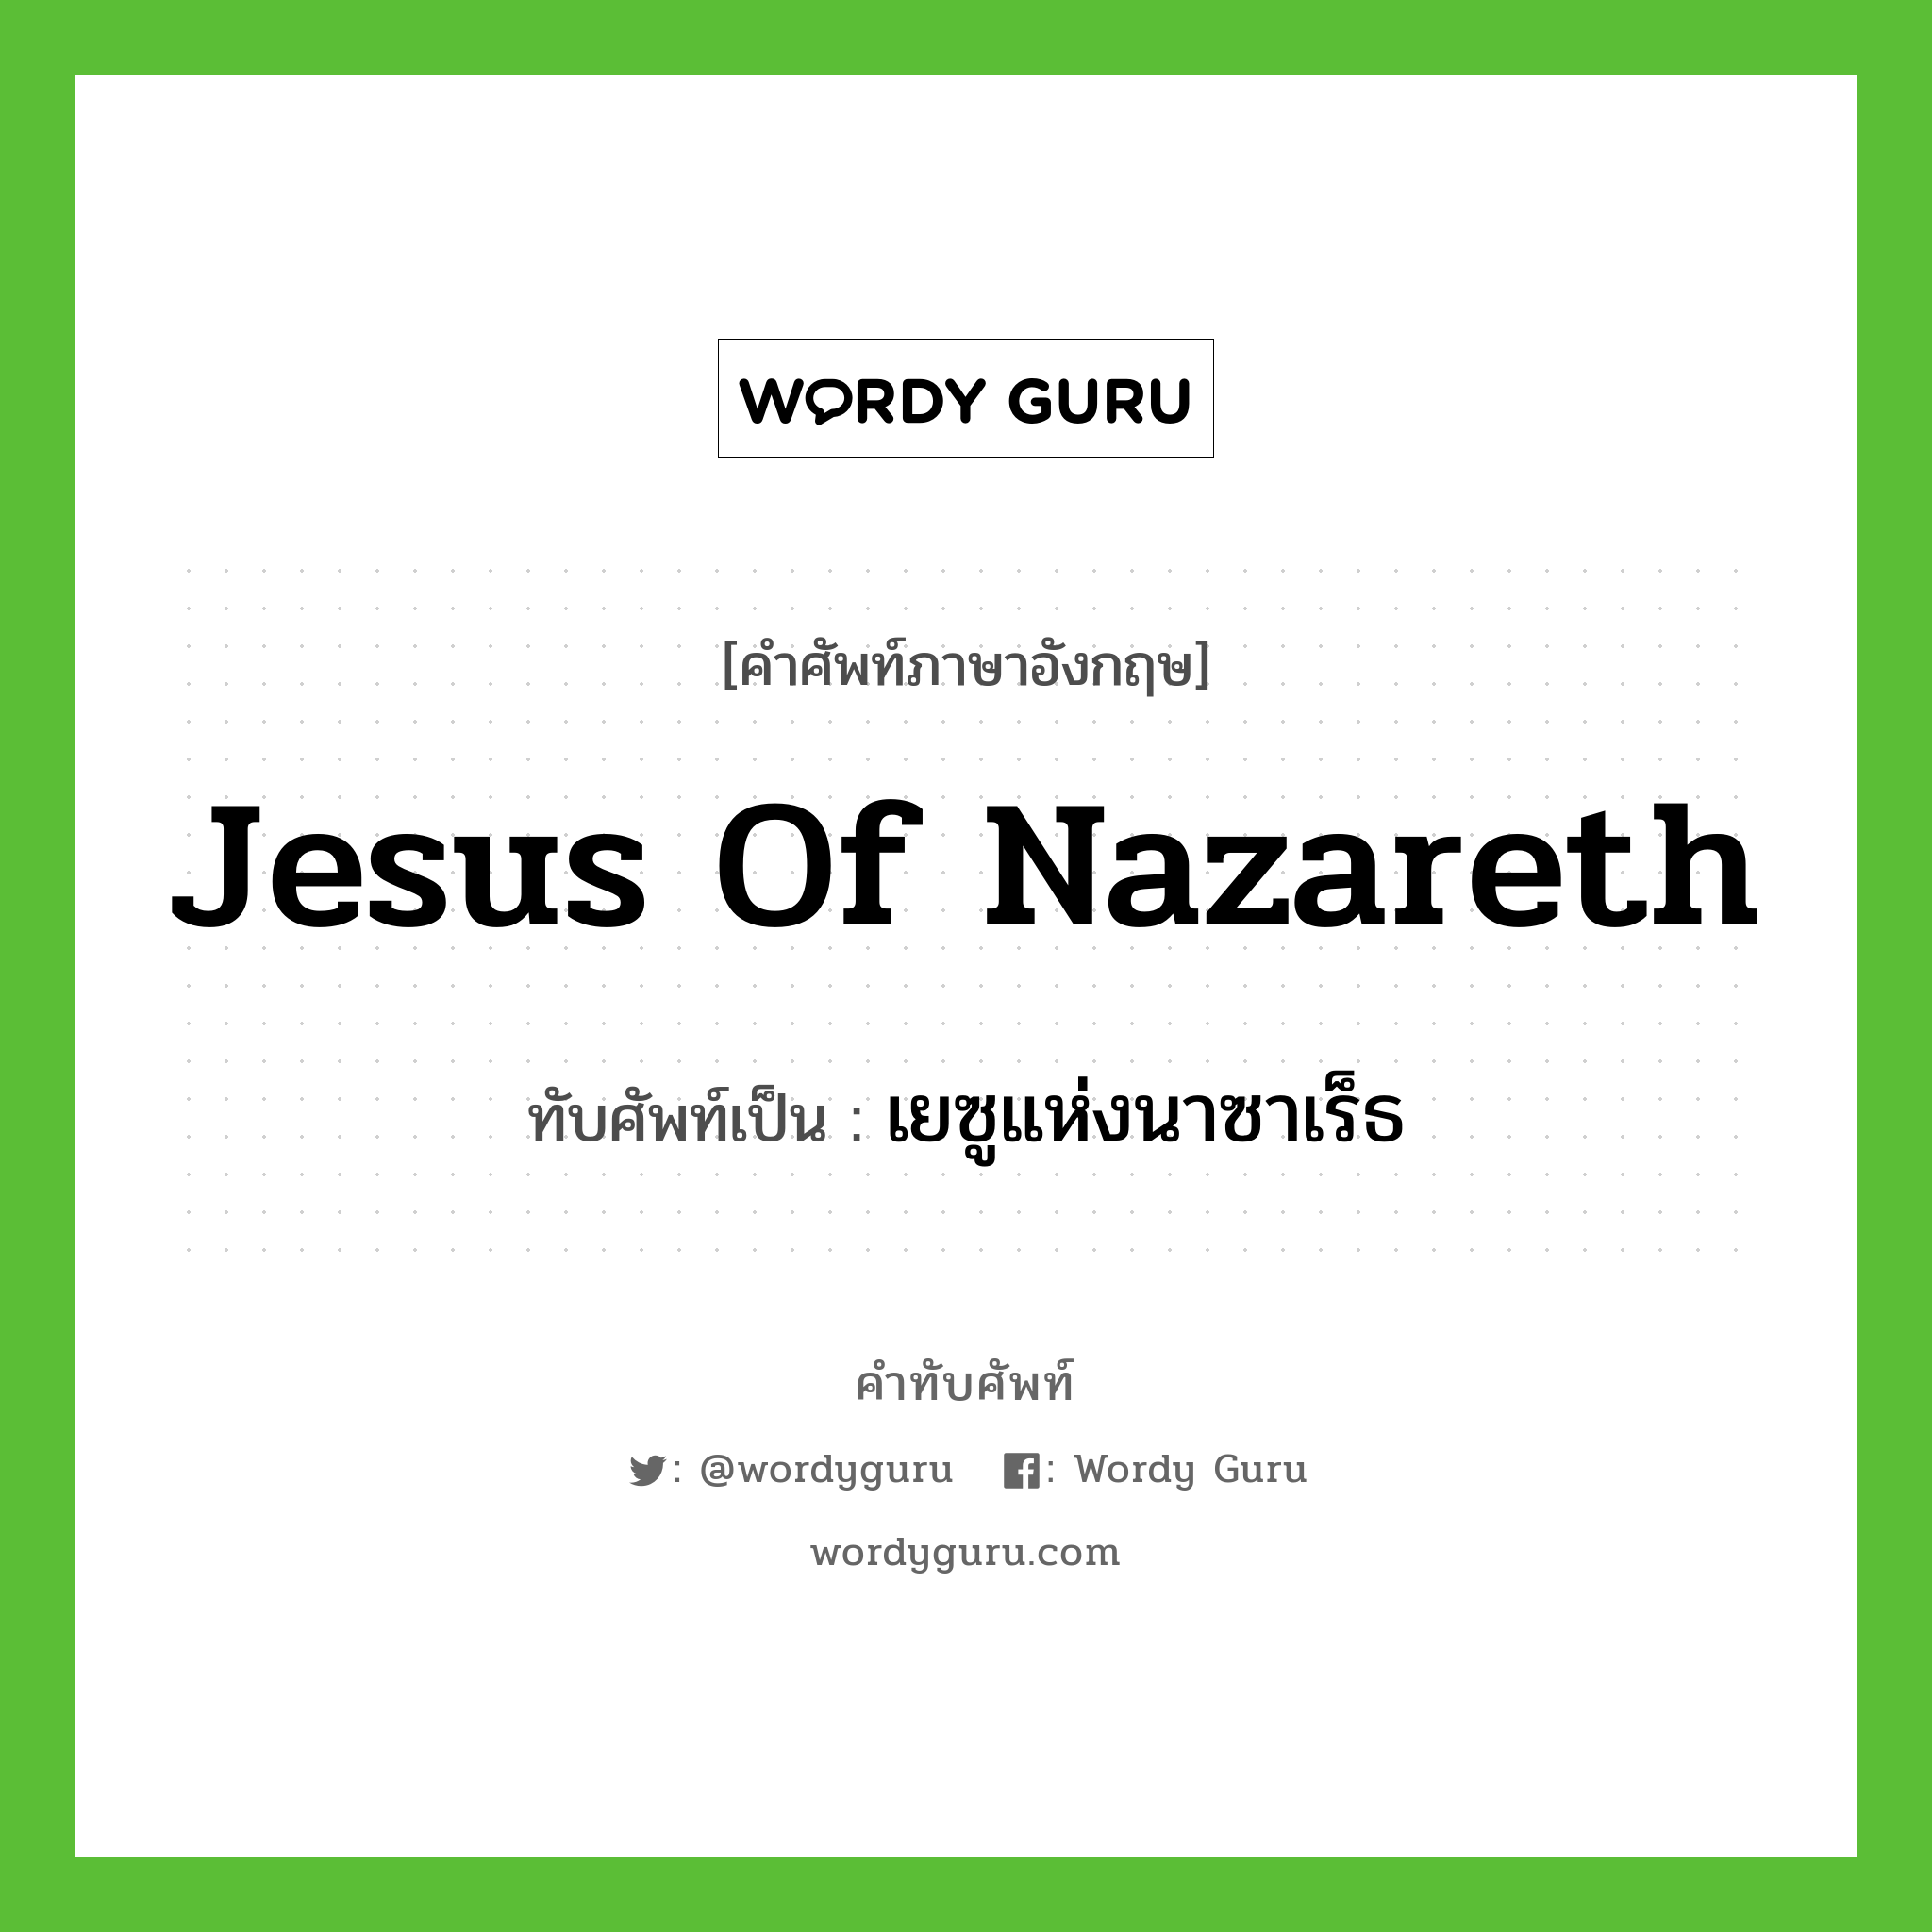 เยซูแห่งนาซาเร็ธ เขียนอย่างไร?, คำศัพท์ภาษาอังกฤษ เยซูแห่งนาซาเร็ธ ทับศัพท์เป็น Jesus of Nazareth